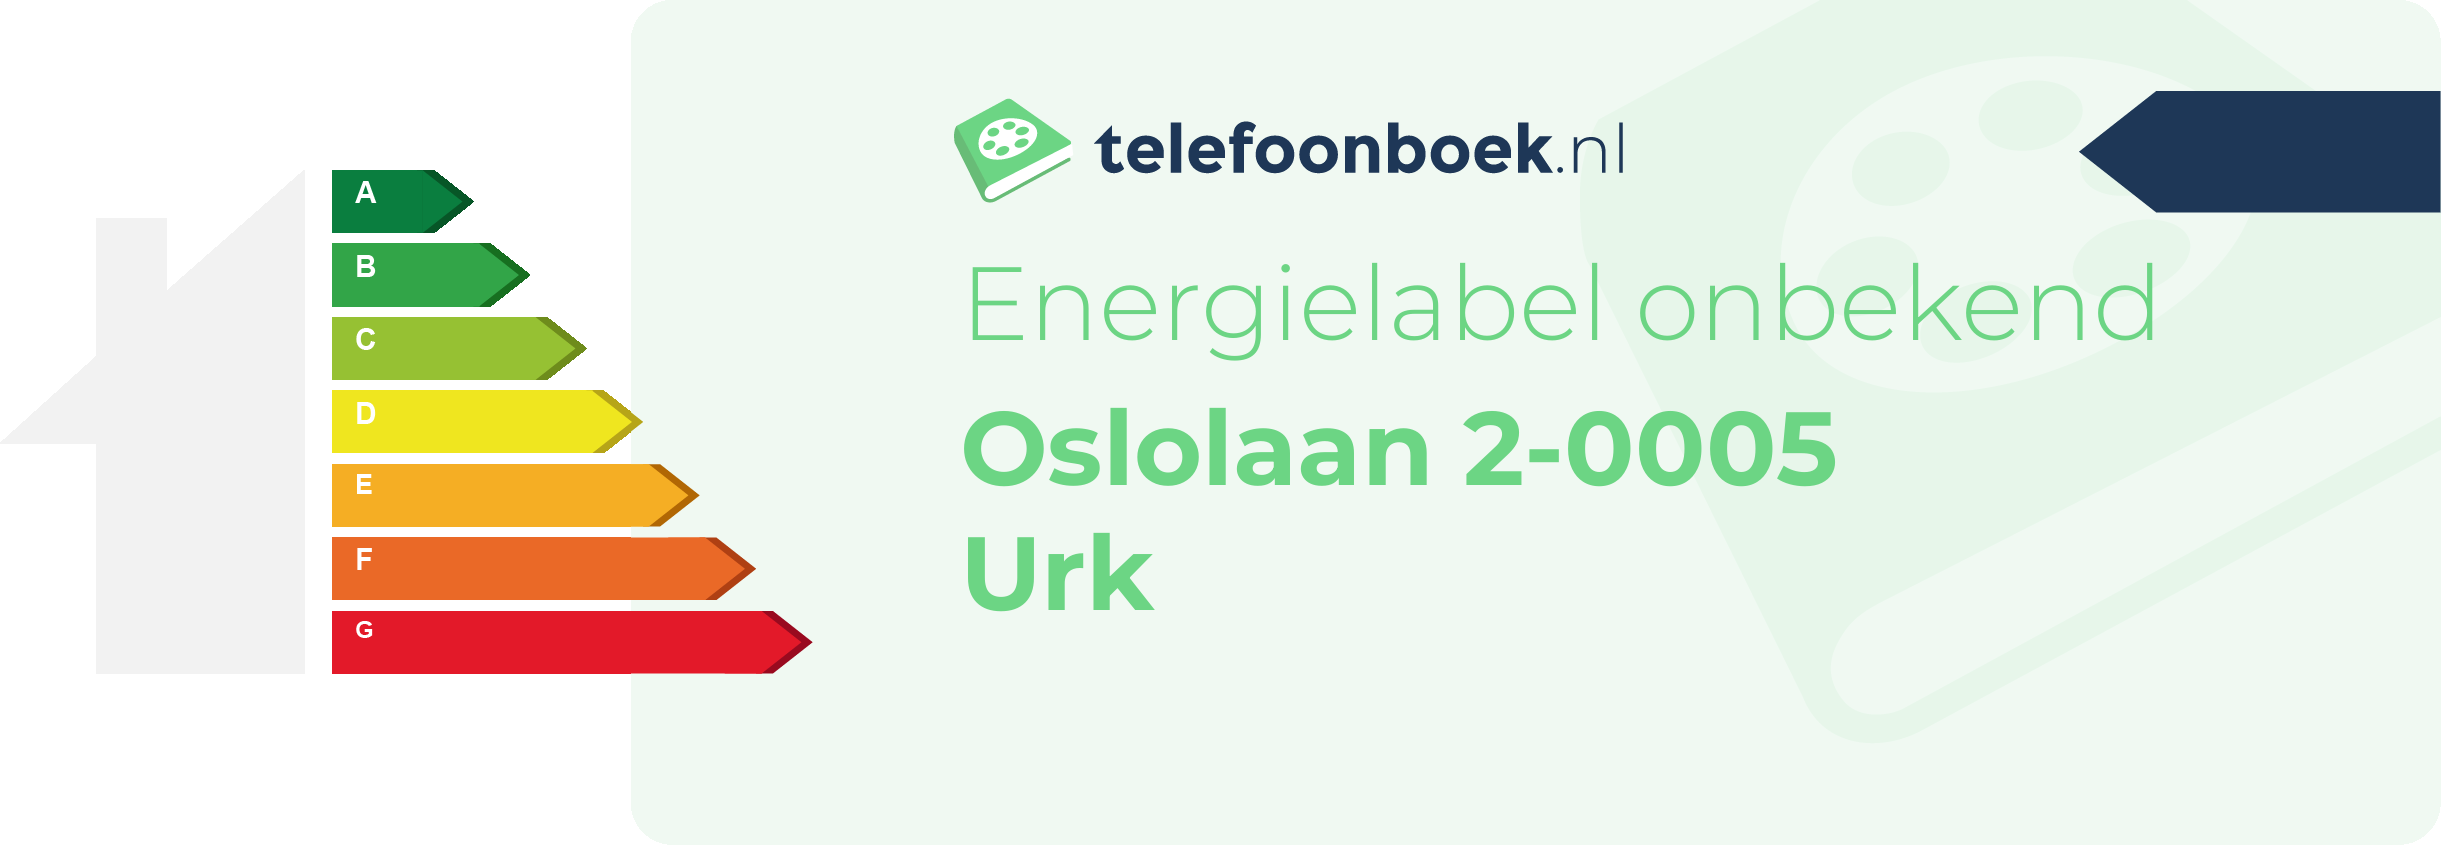 Energielabel Oslolaan 2-0005 Urk